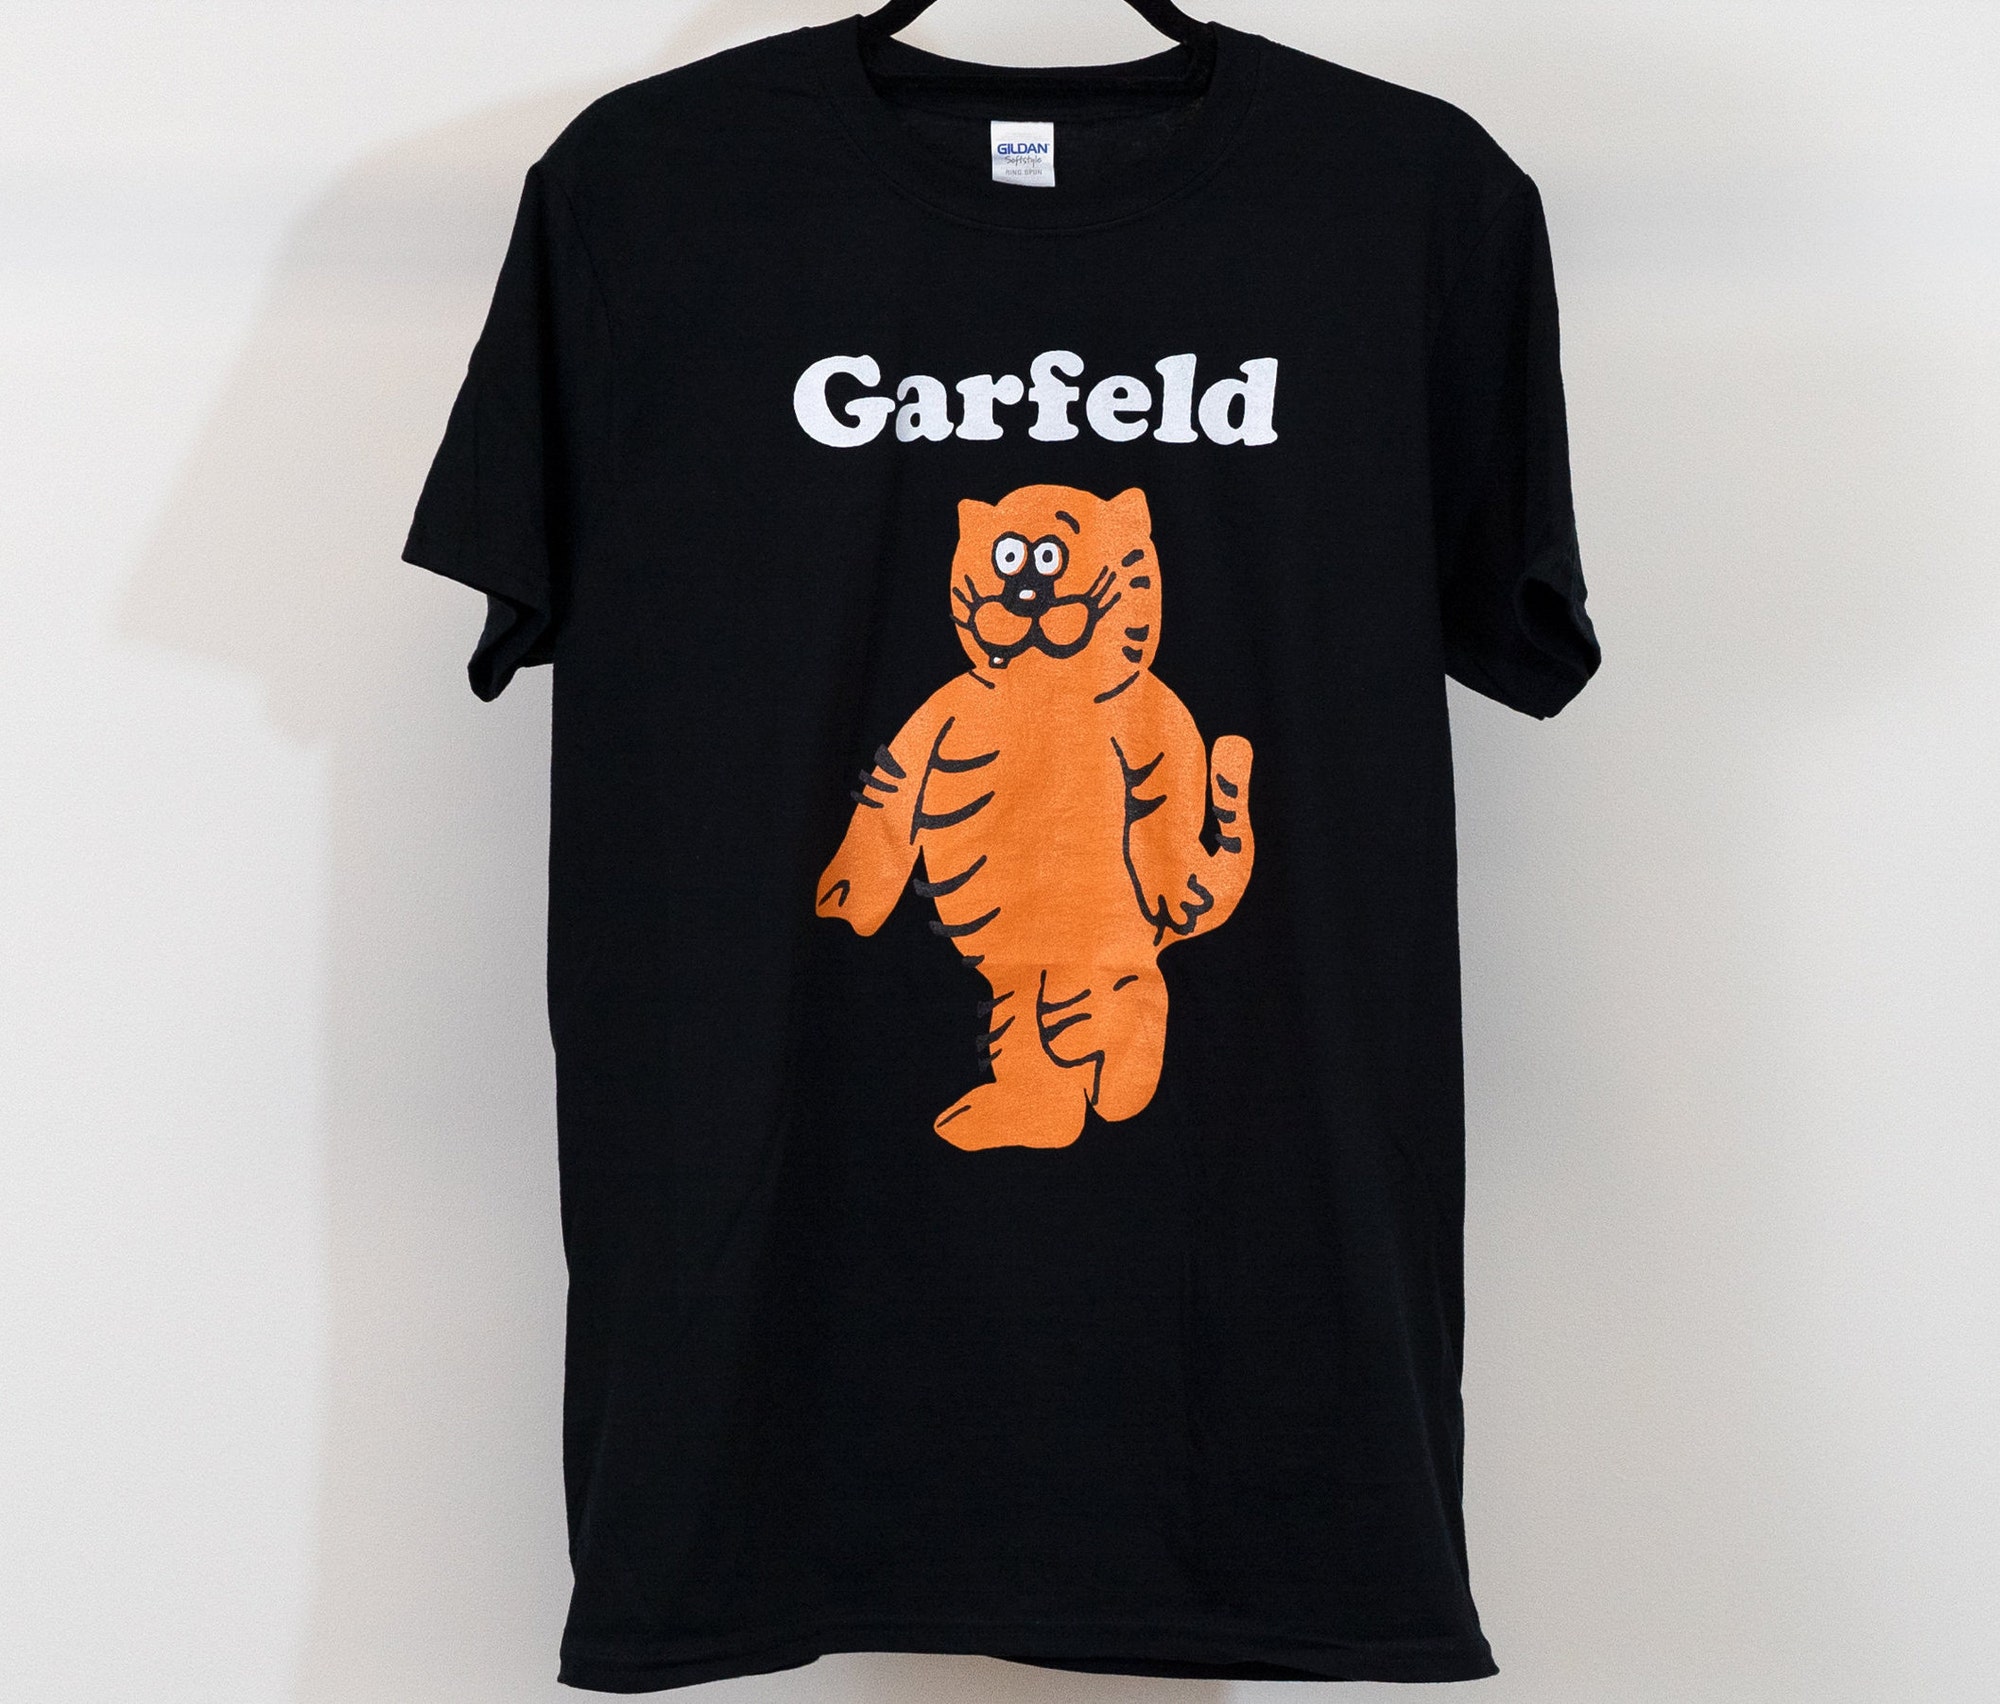 Garfeld bootleg Garfield and Heathcliff cat t-shirt